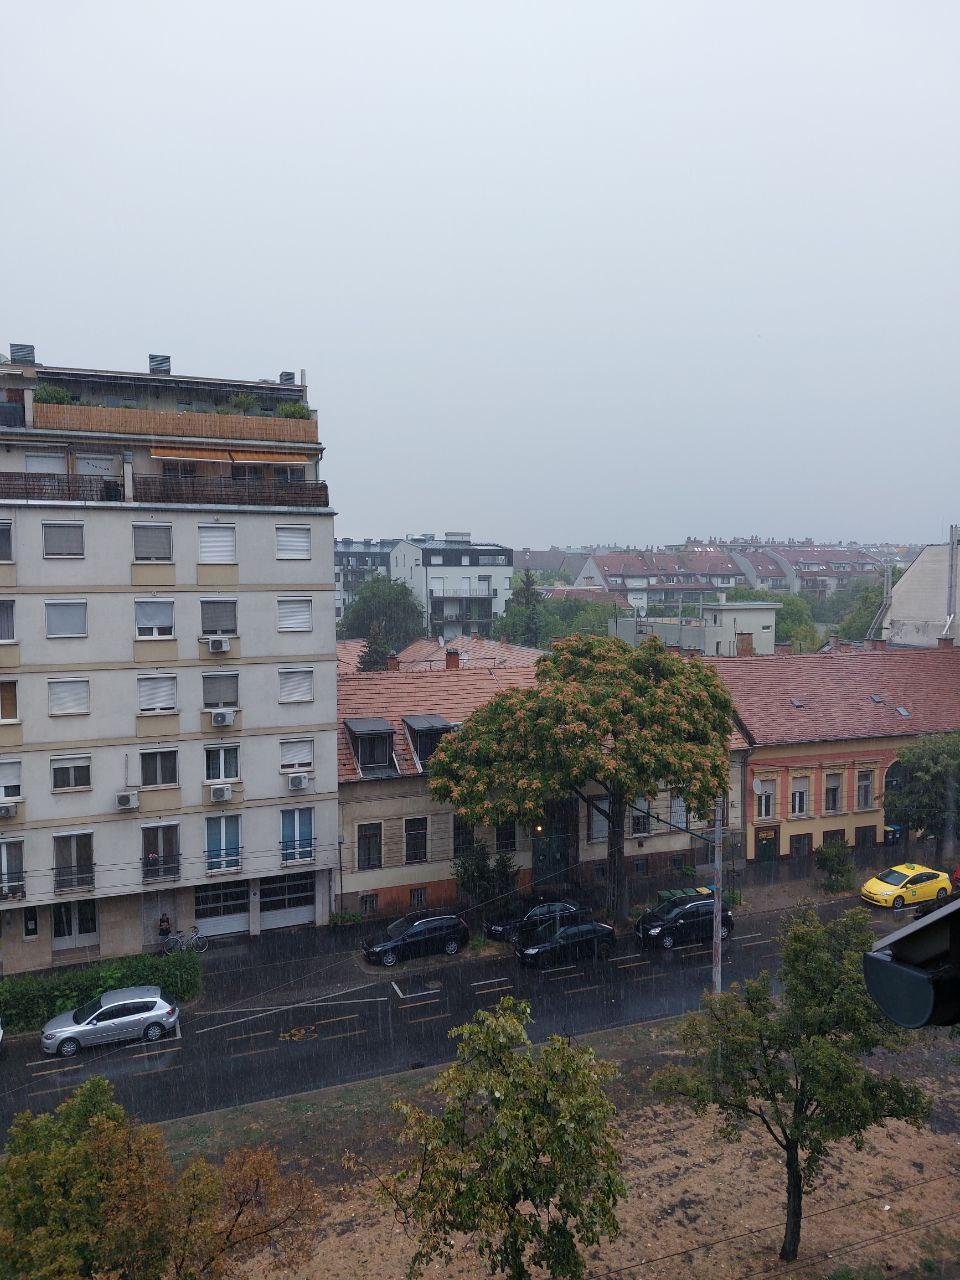 Август или июль, вид на улицу Рона в Будапеште